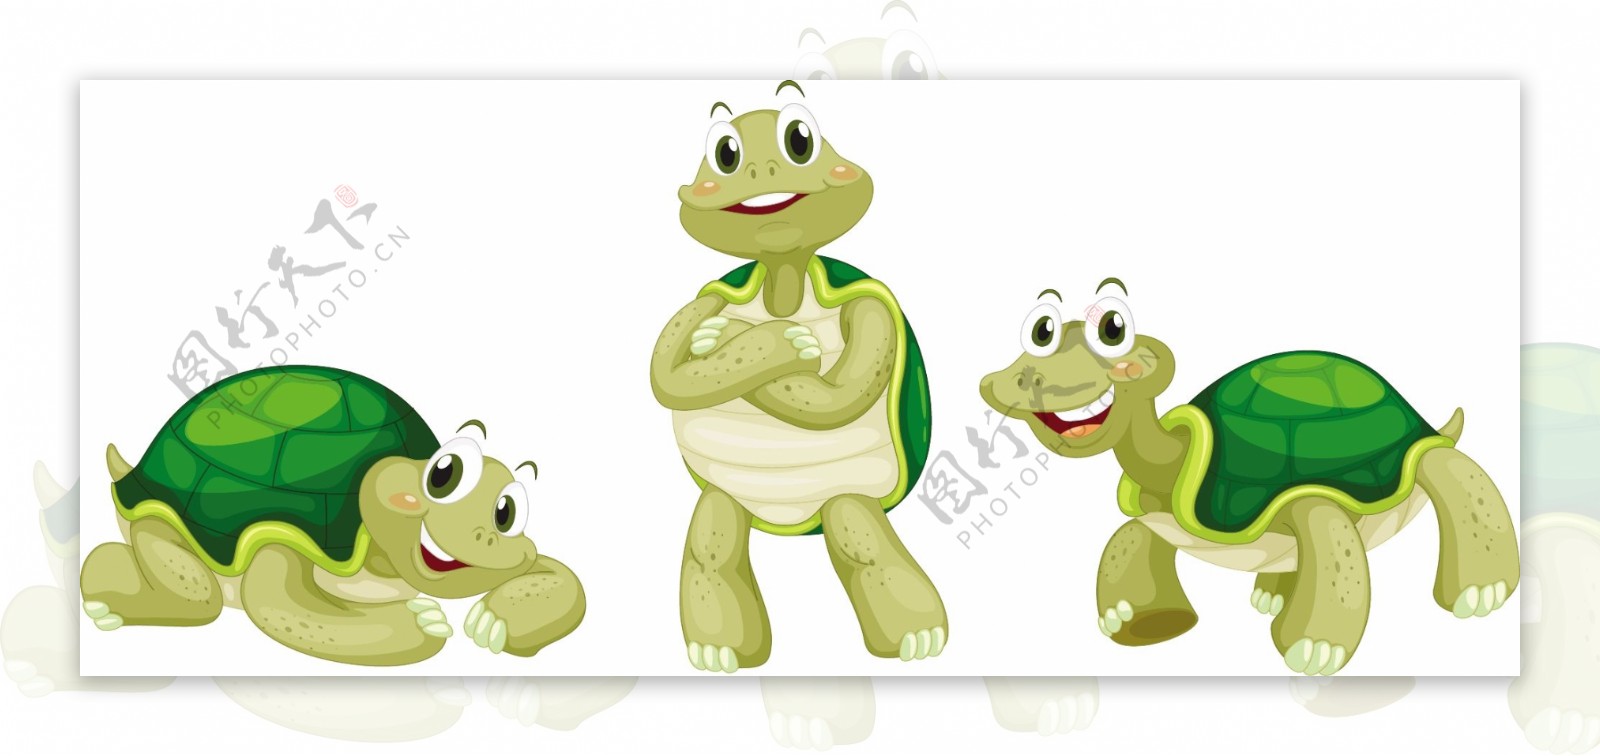 白色背景下海龟的插图